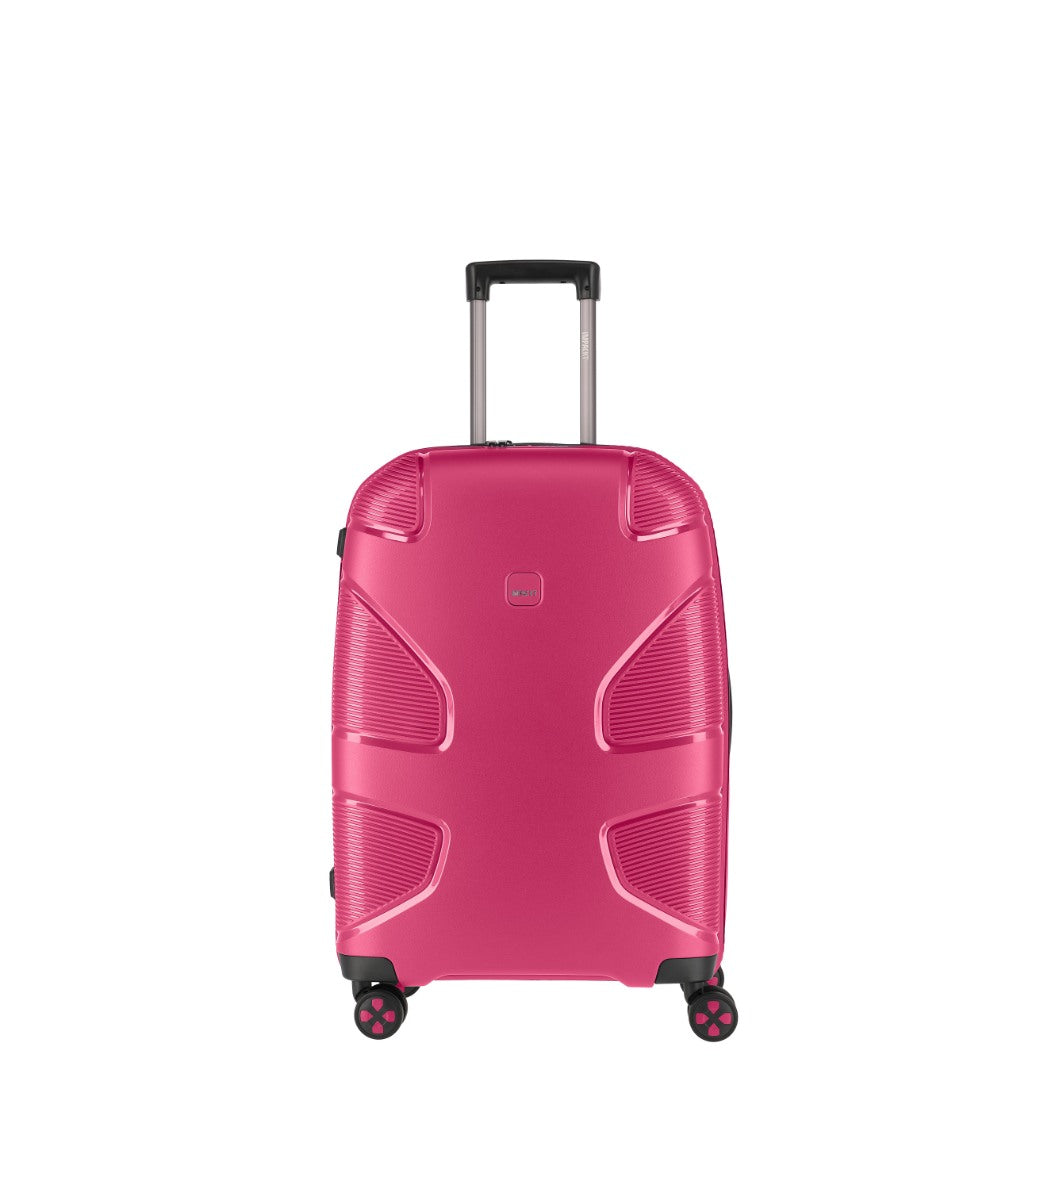 Impackt IP1 Pink Kuffert - Mellen - 67 cm